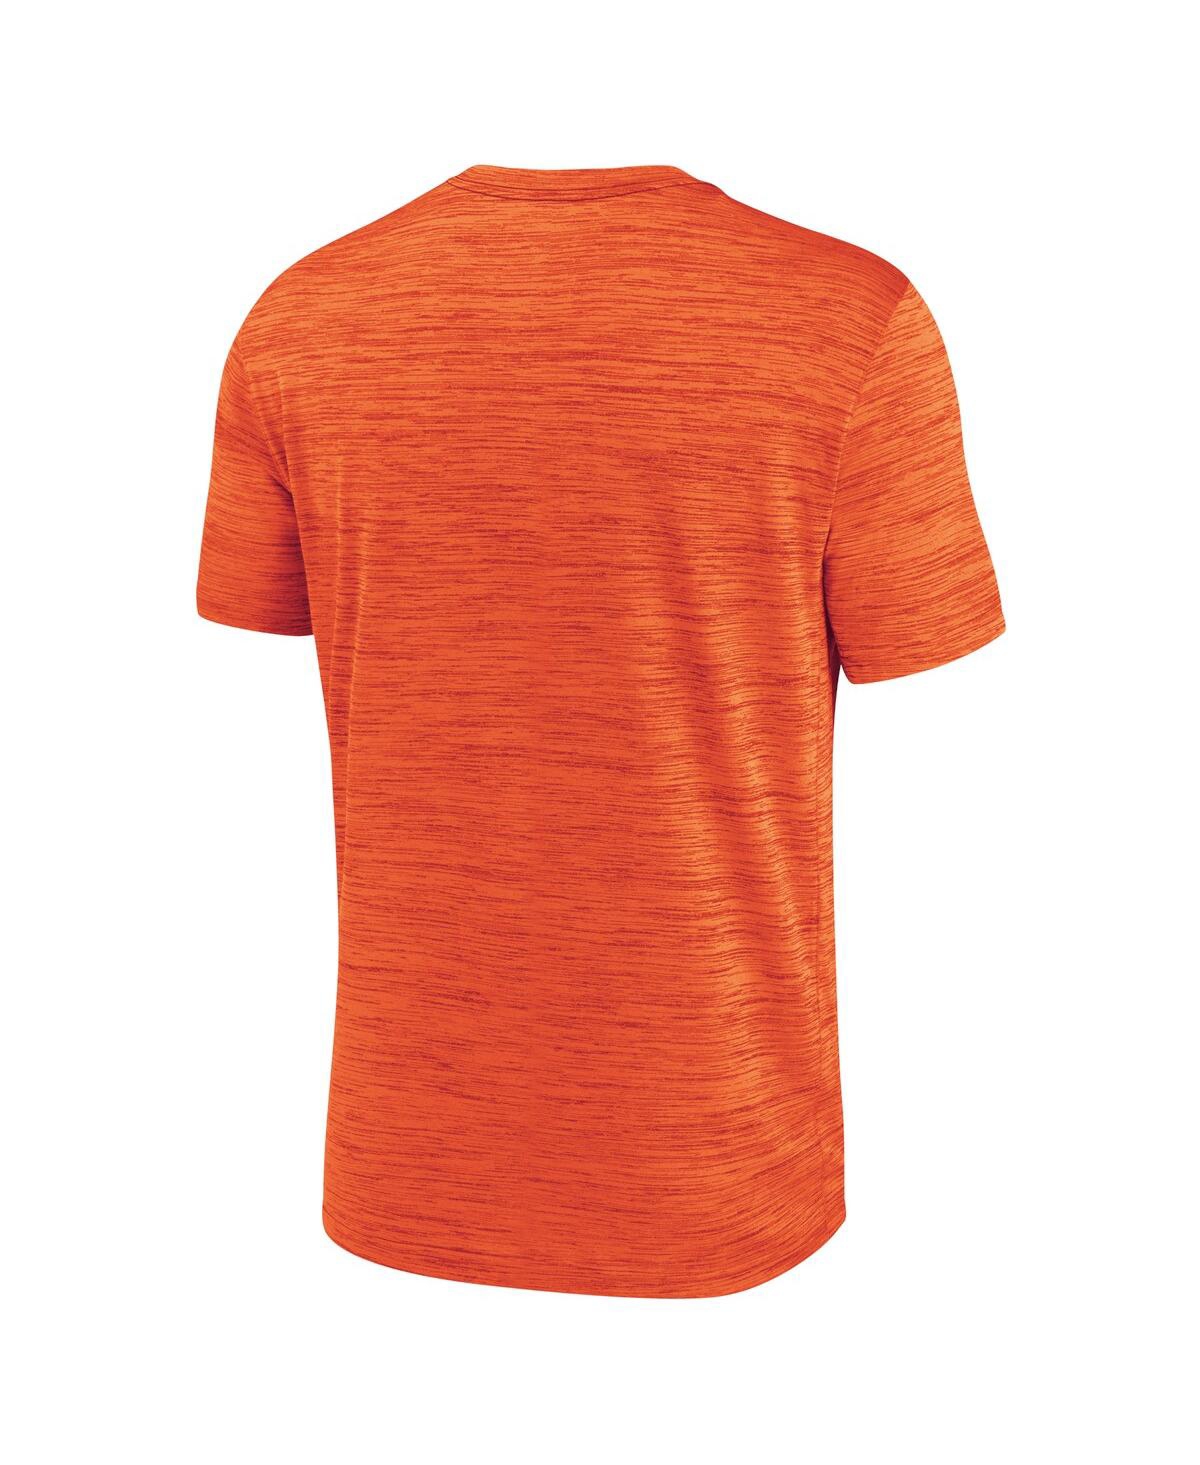 Shop Nike Men's  Orange Detroit Tigers Authentic Collection Velocity Performance Practice T-shirt